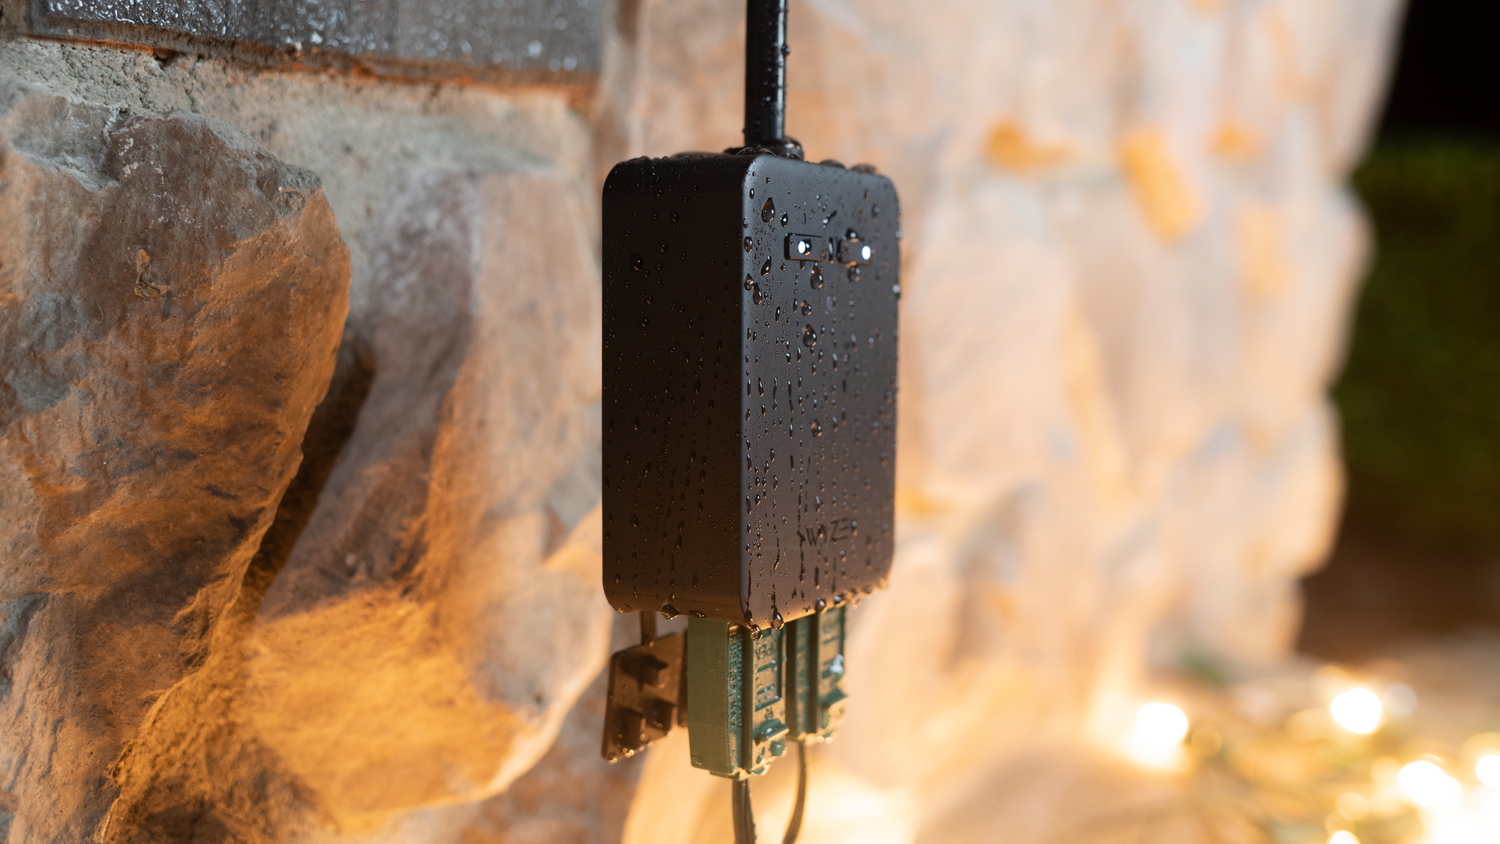 Wyze Indoor/Outdoor WiFi Smart Plug